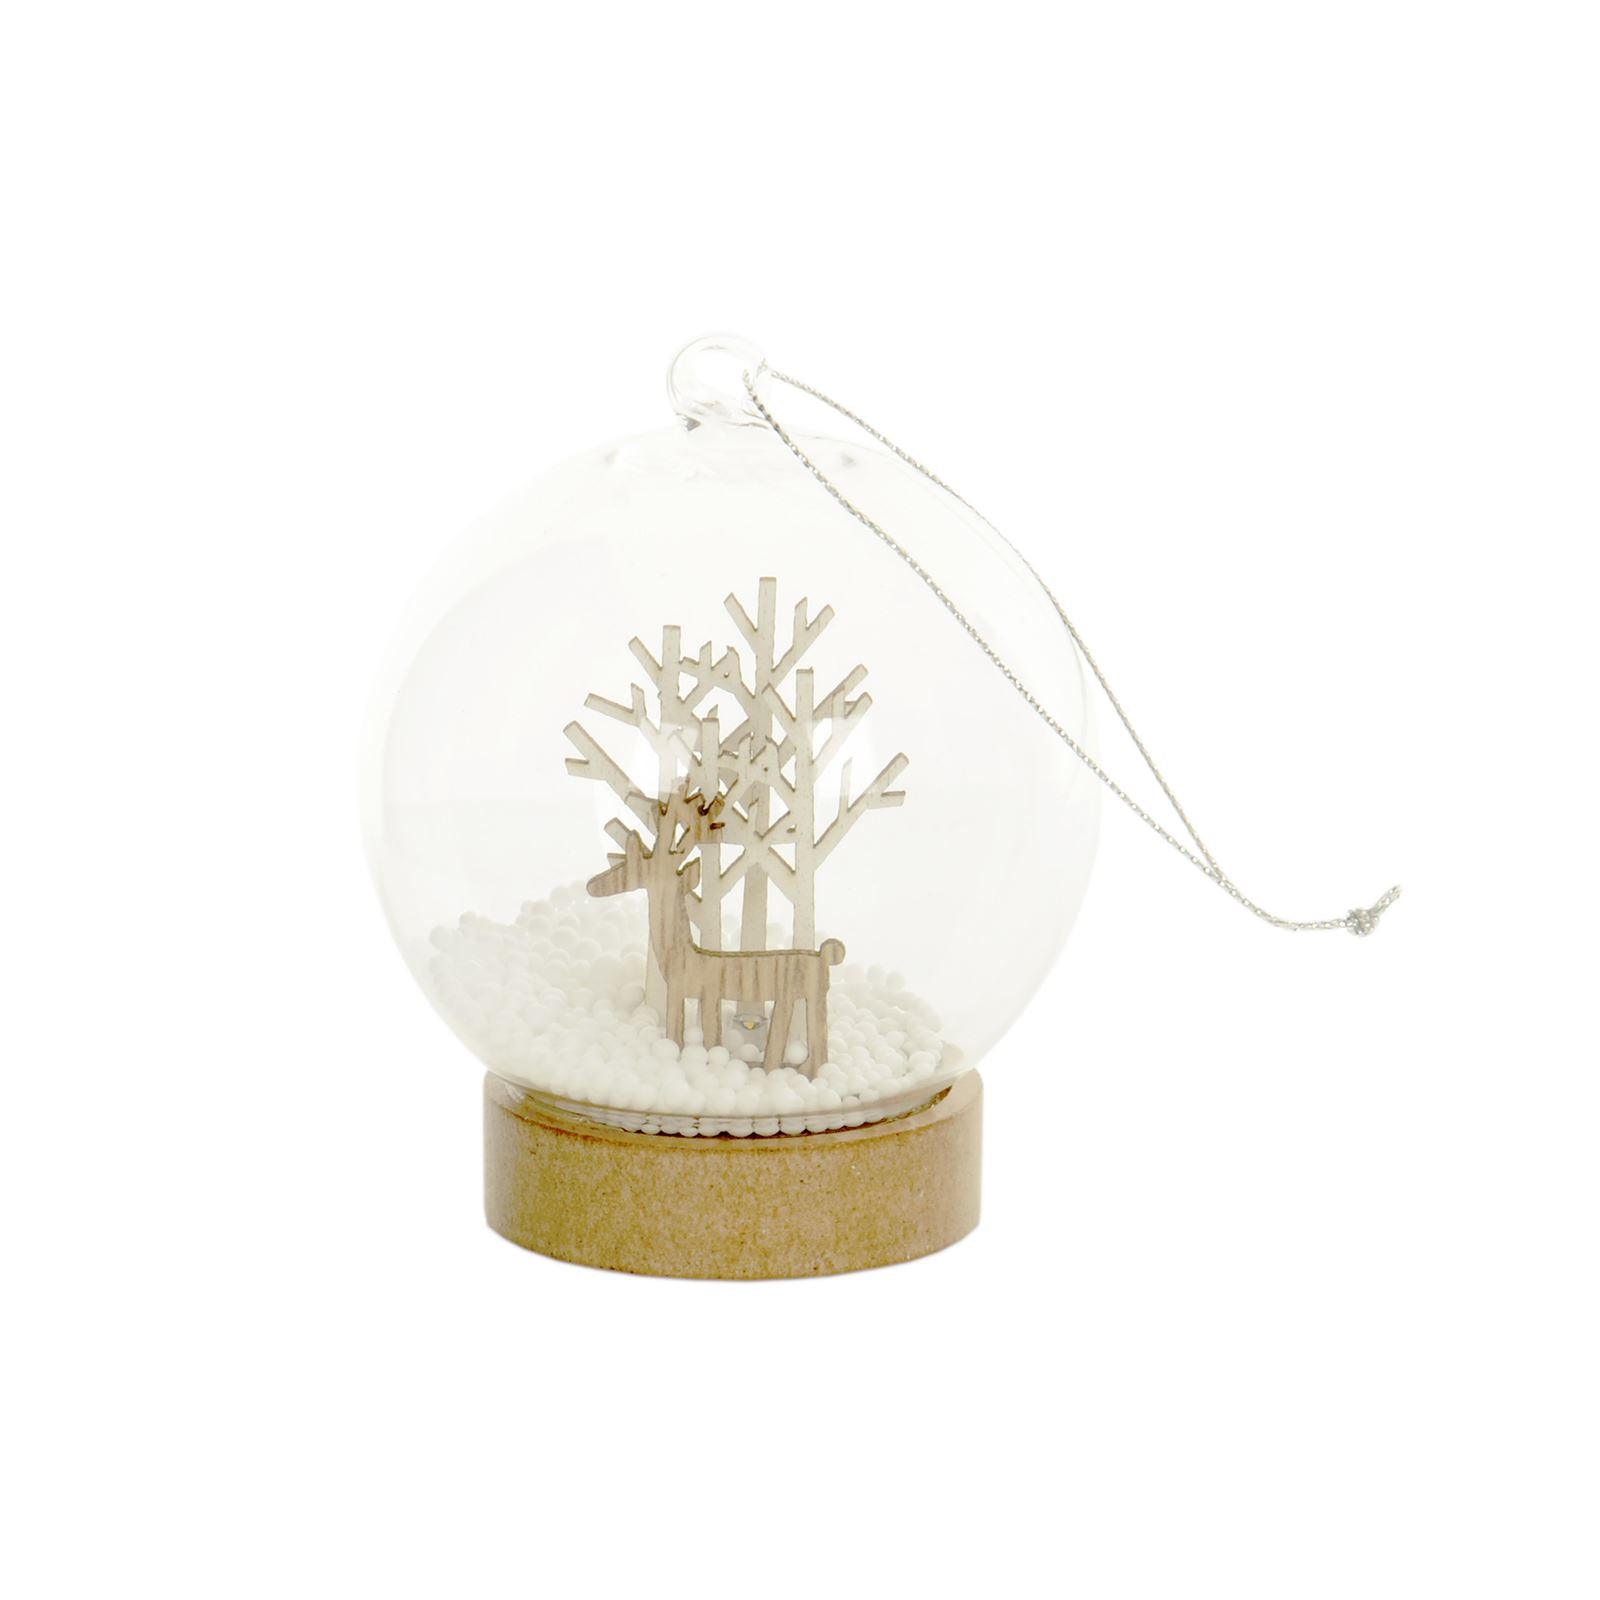 Mr Crimbo Glass Globe Light Up Christmas Tree Baubles - MrCrimbo.co.uk -XS5067 - Reindeer/Twig Trees -Baubles